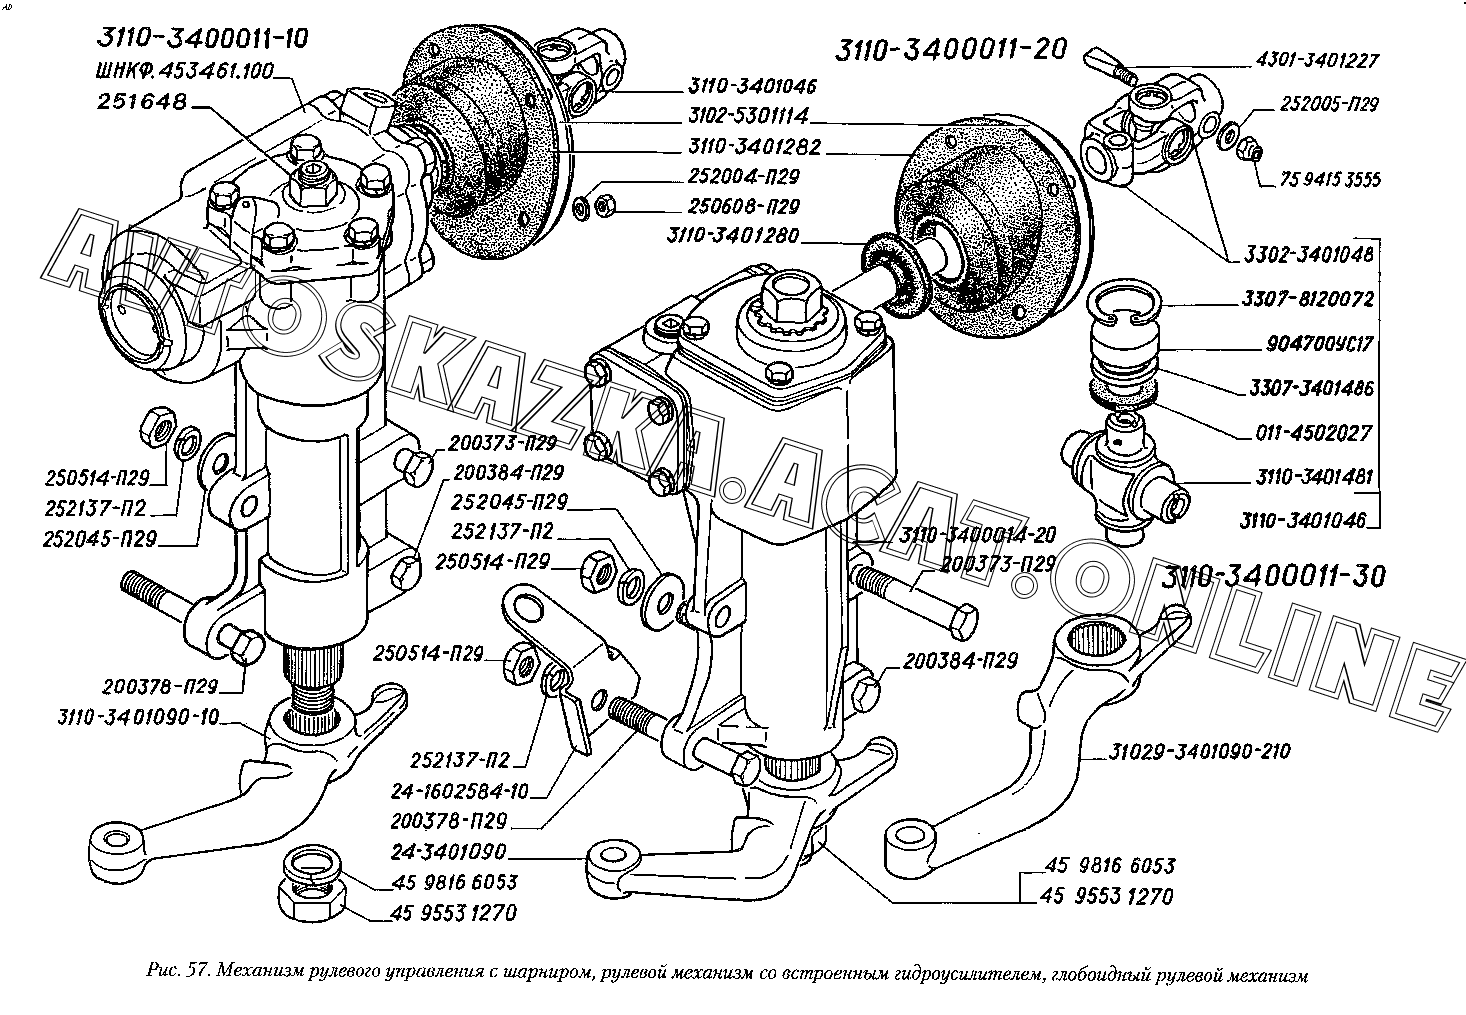 Конструкция рулевого управления автомобиля ГАЗ – 3110 без гидроусилителя